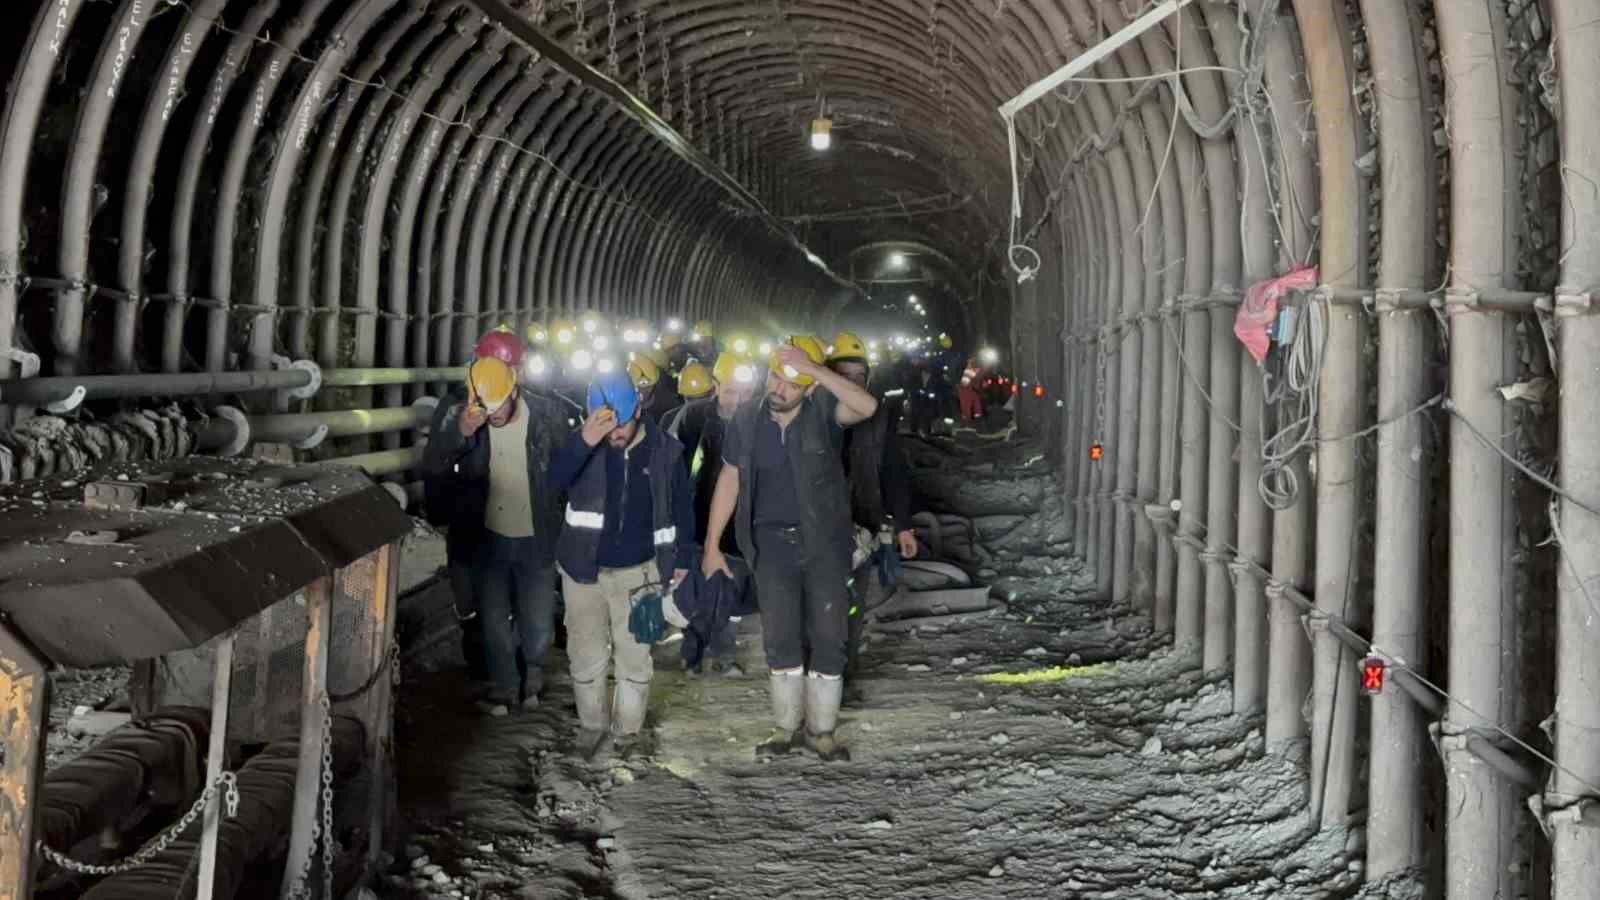 Yerin yüzlerce metre altındaki maden işçilerinin açlık grevi sona erdi